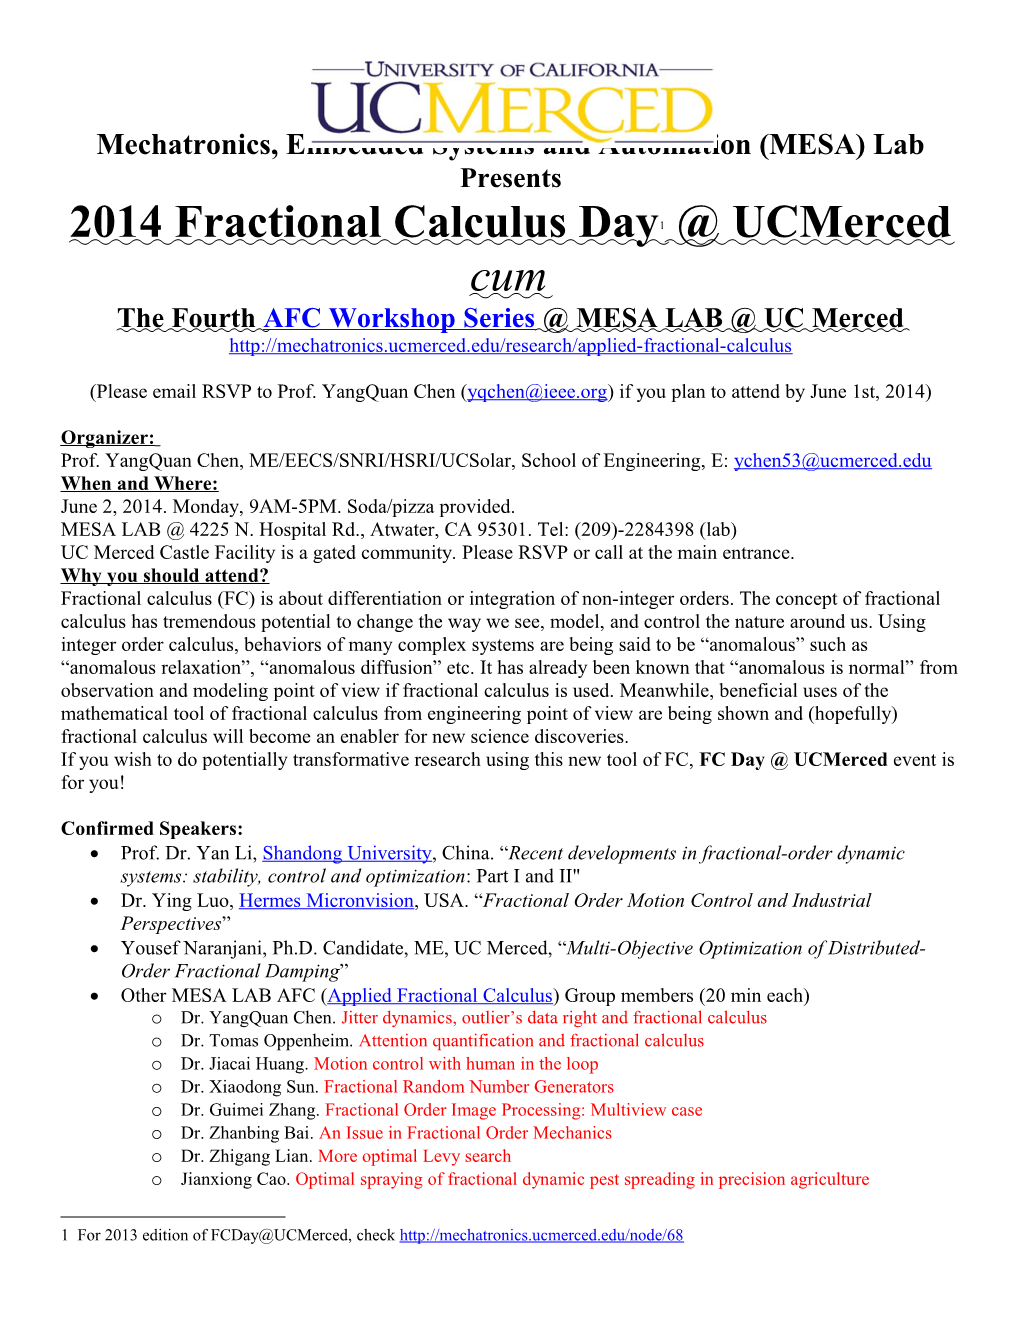 FC Day UC Merced 2014 Edition